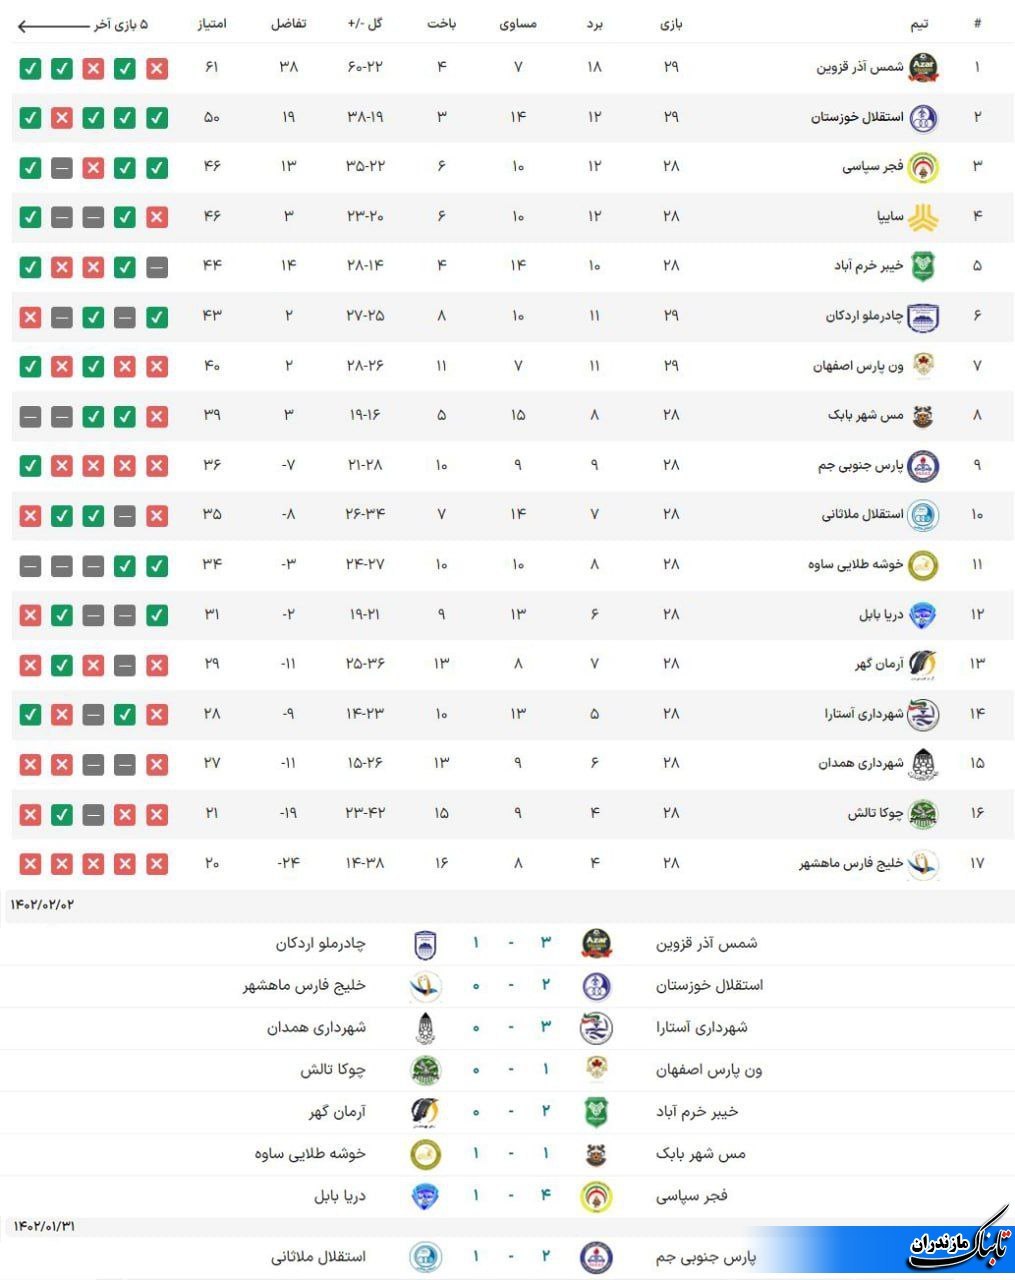 نتایج و جدول لیگ آزادگان در پایان هفته بیست و هشتم